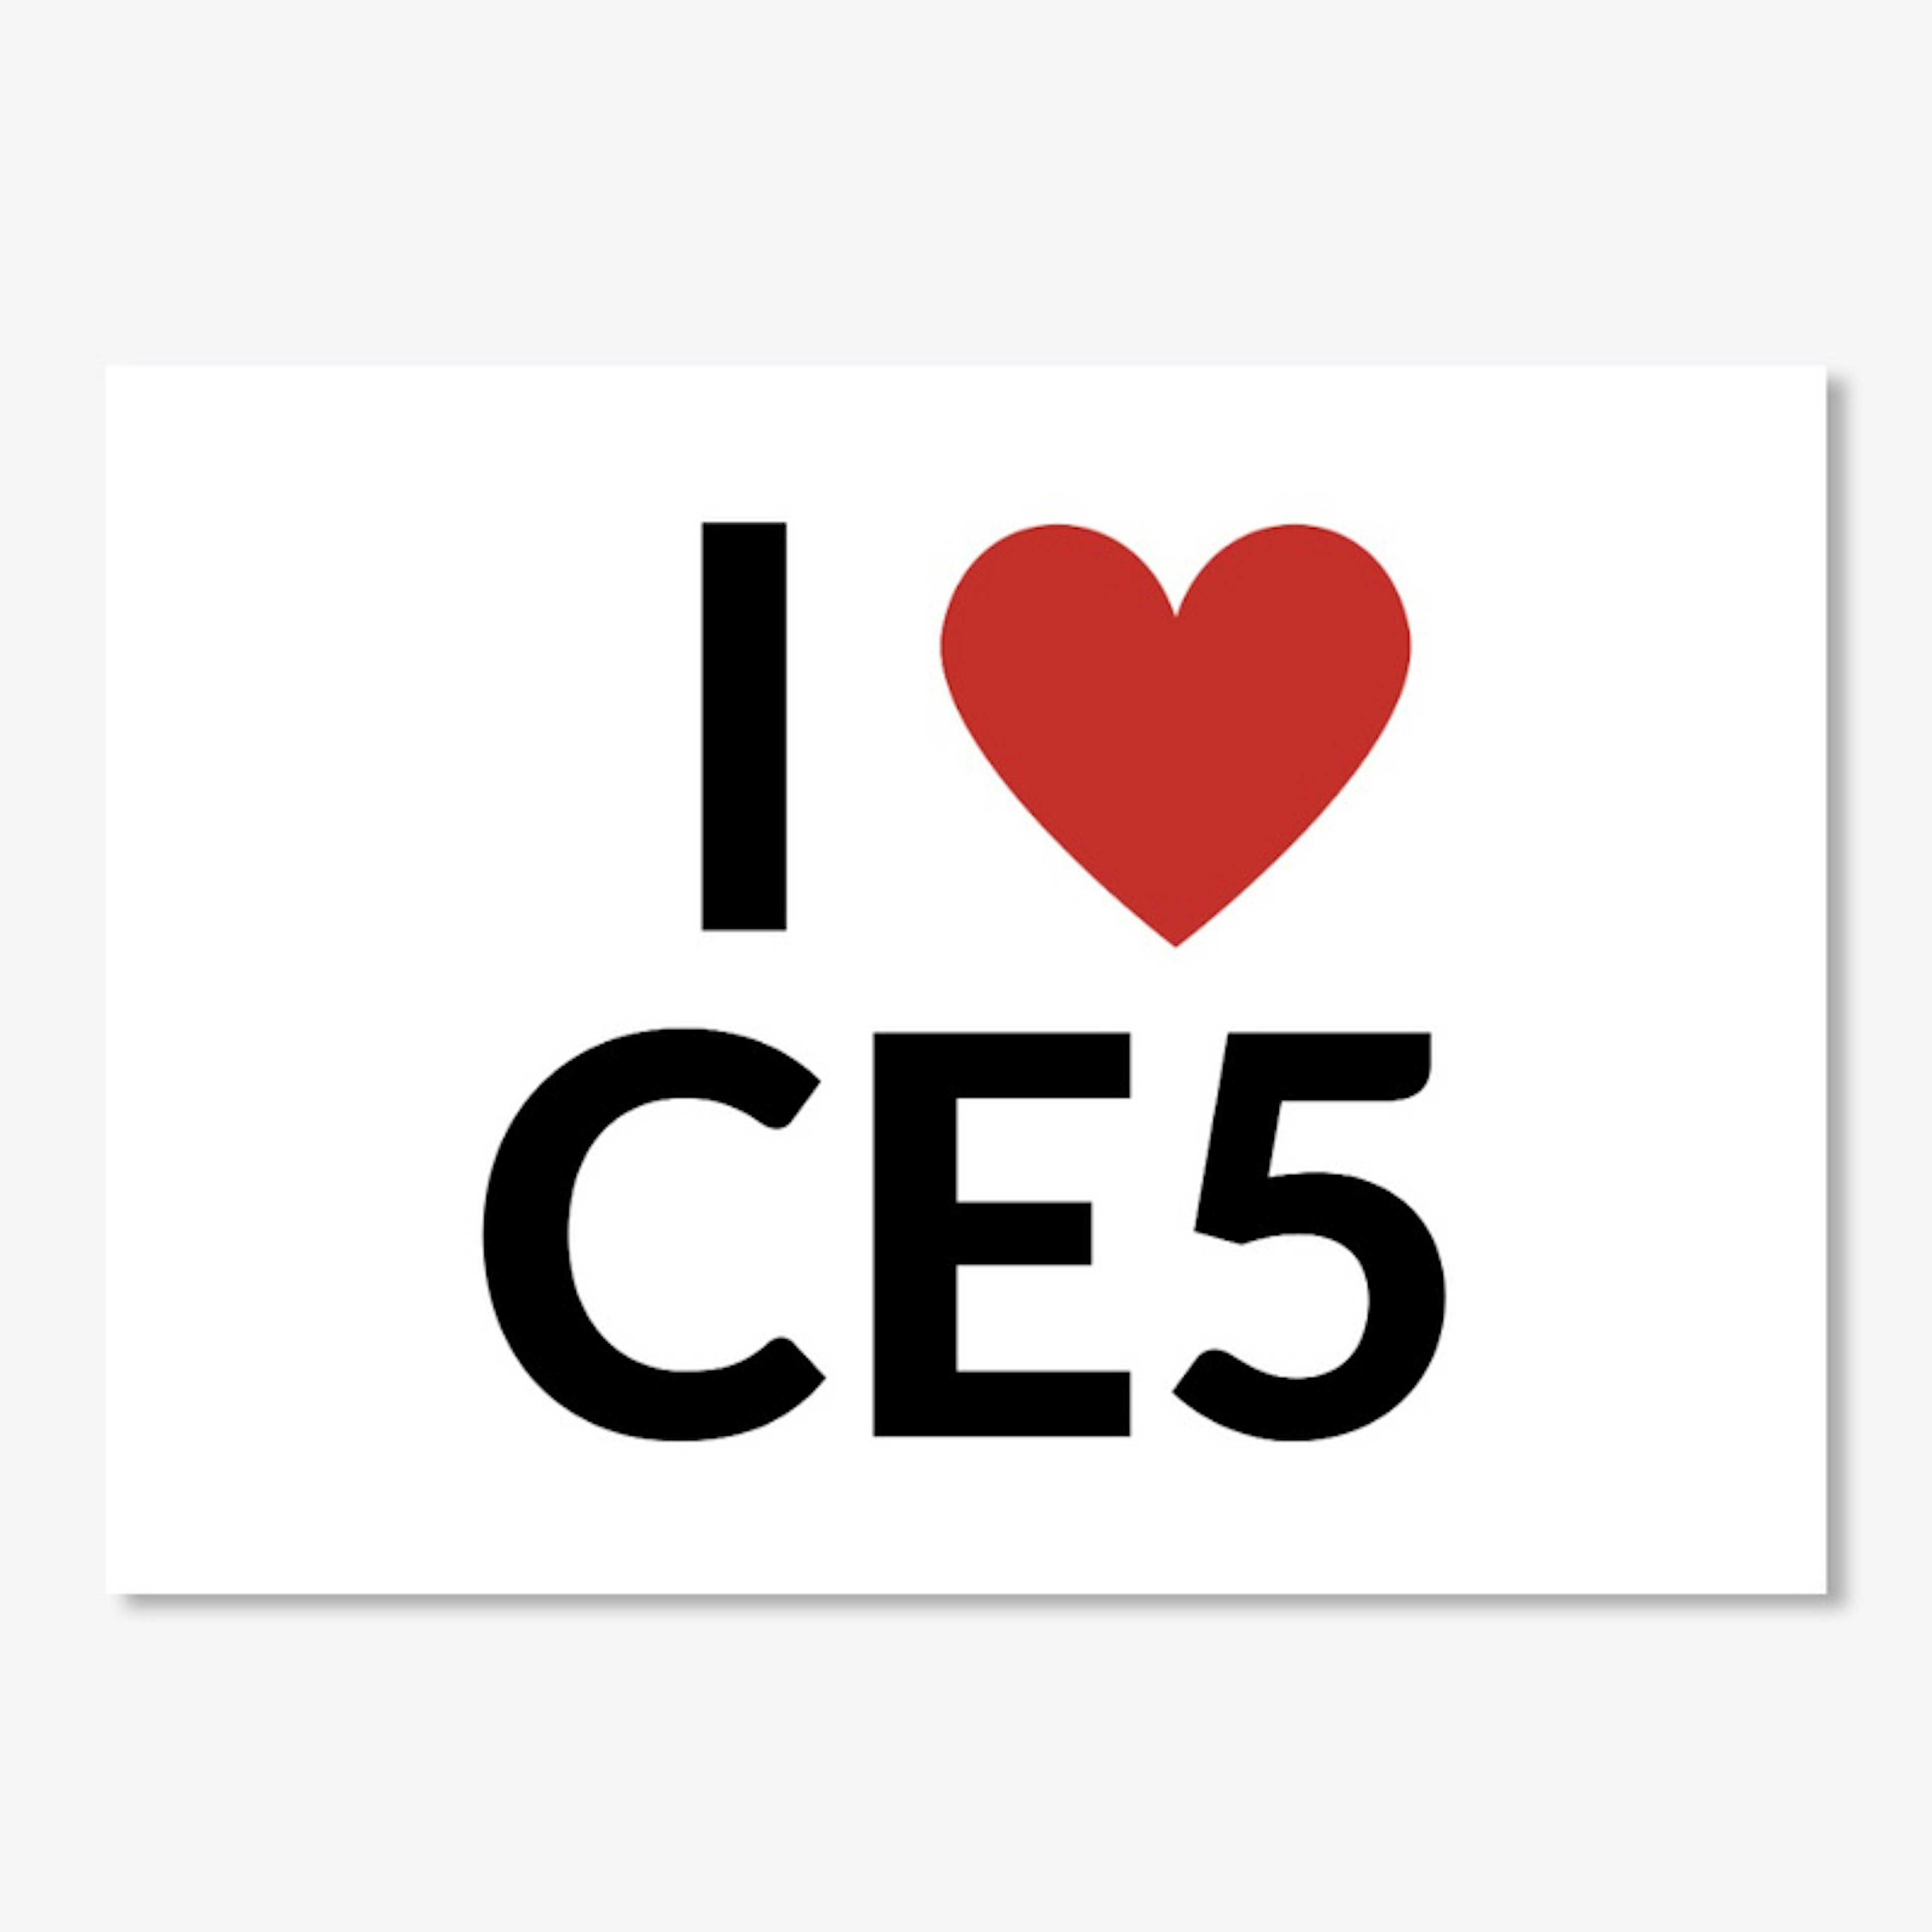 I Love CE5